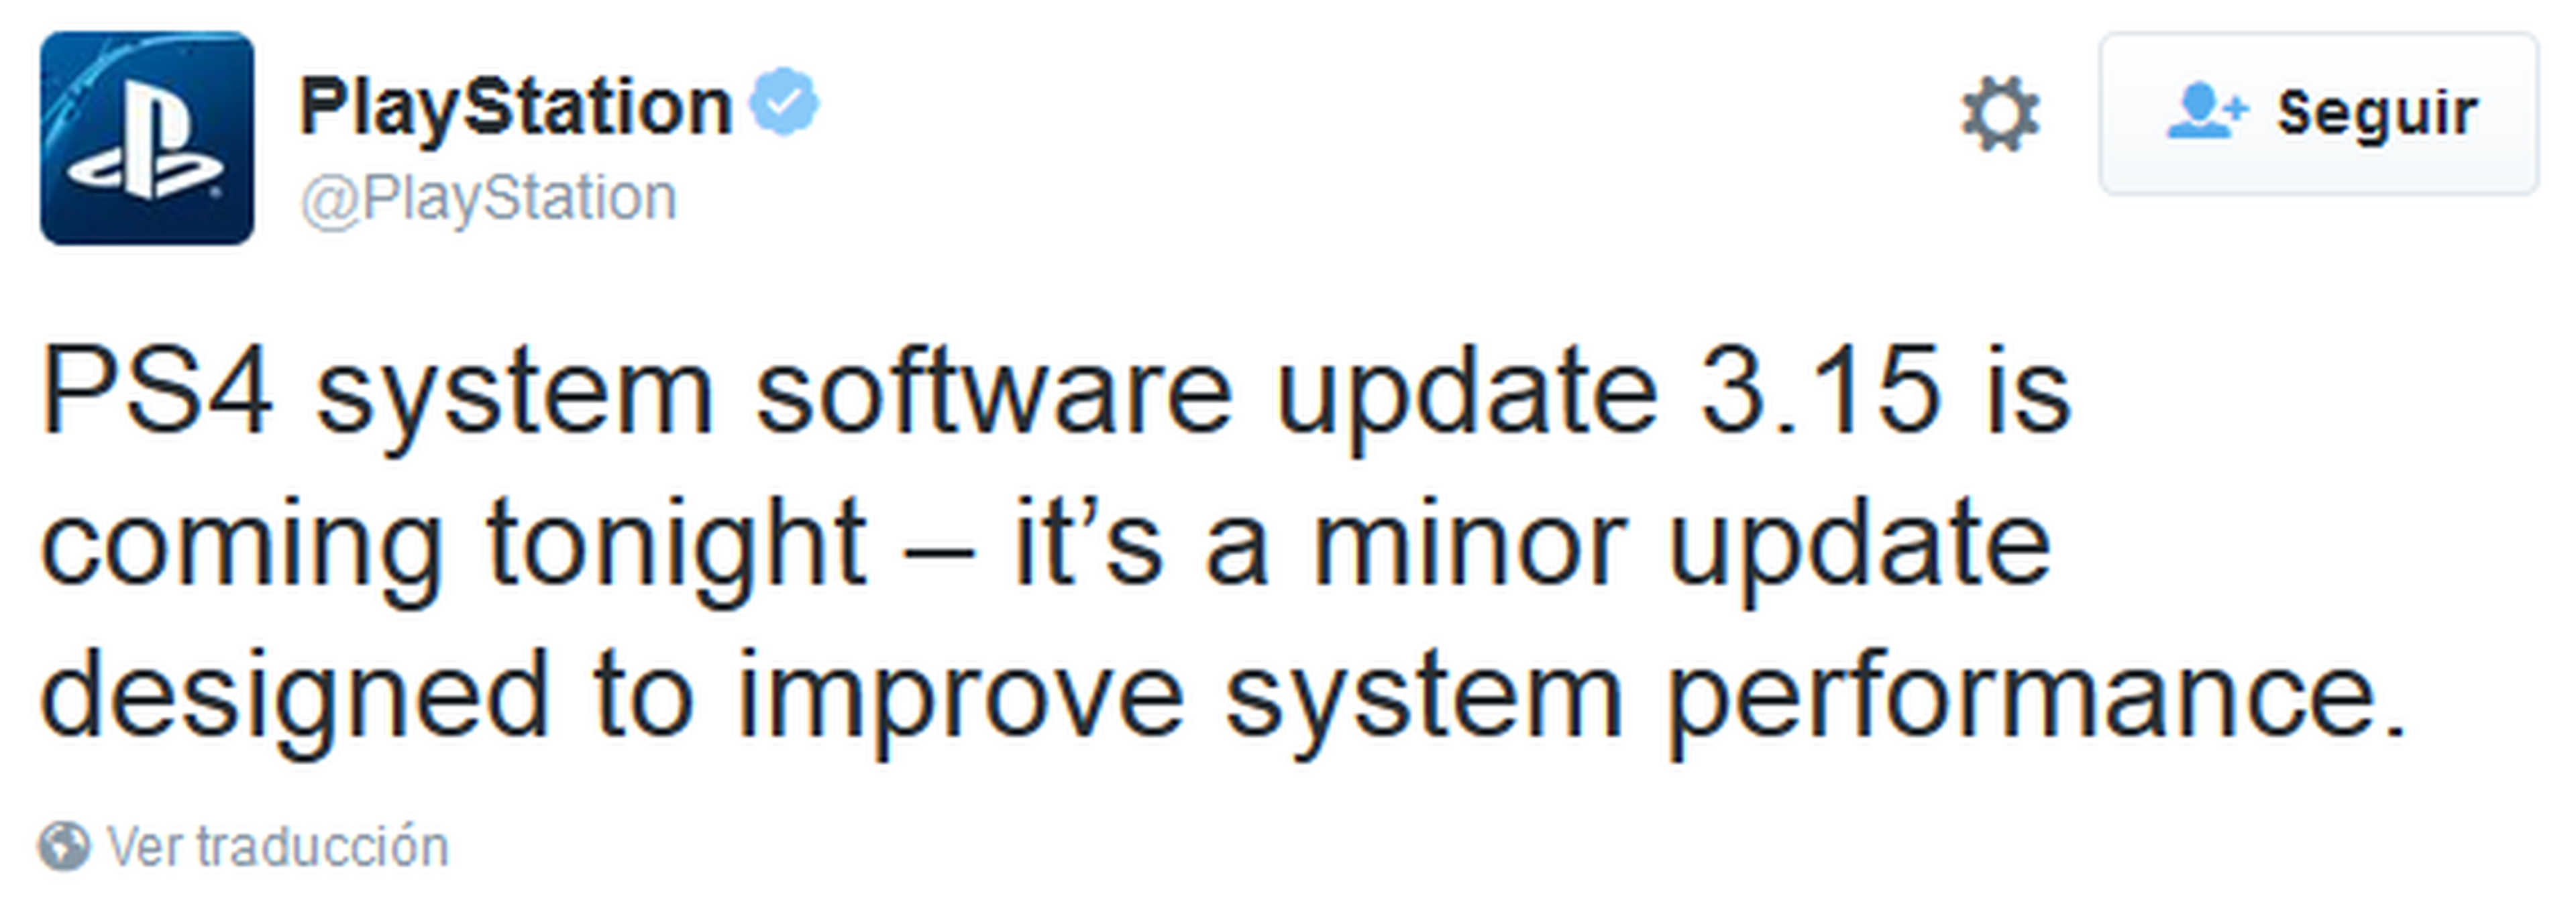 PS4, nueva actualización del sistema